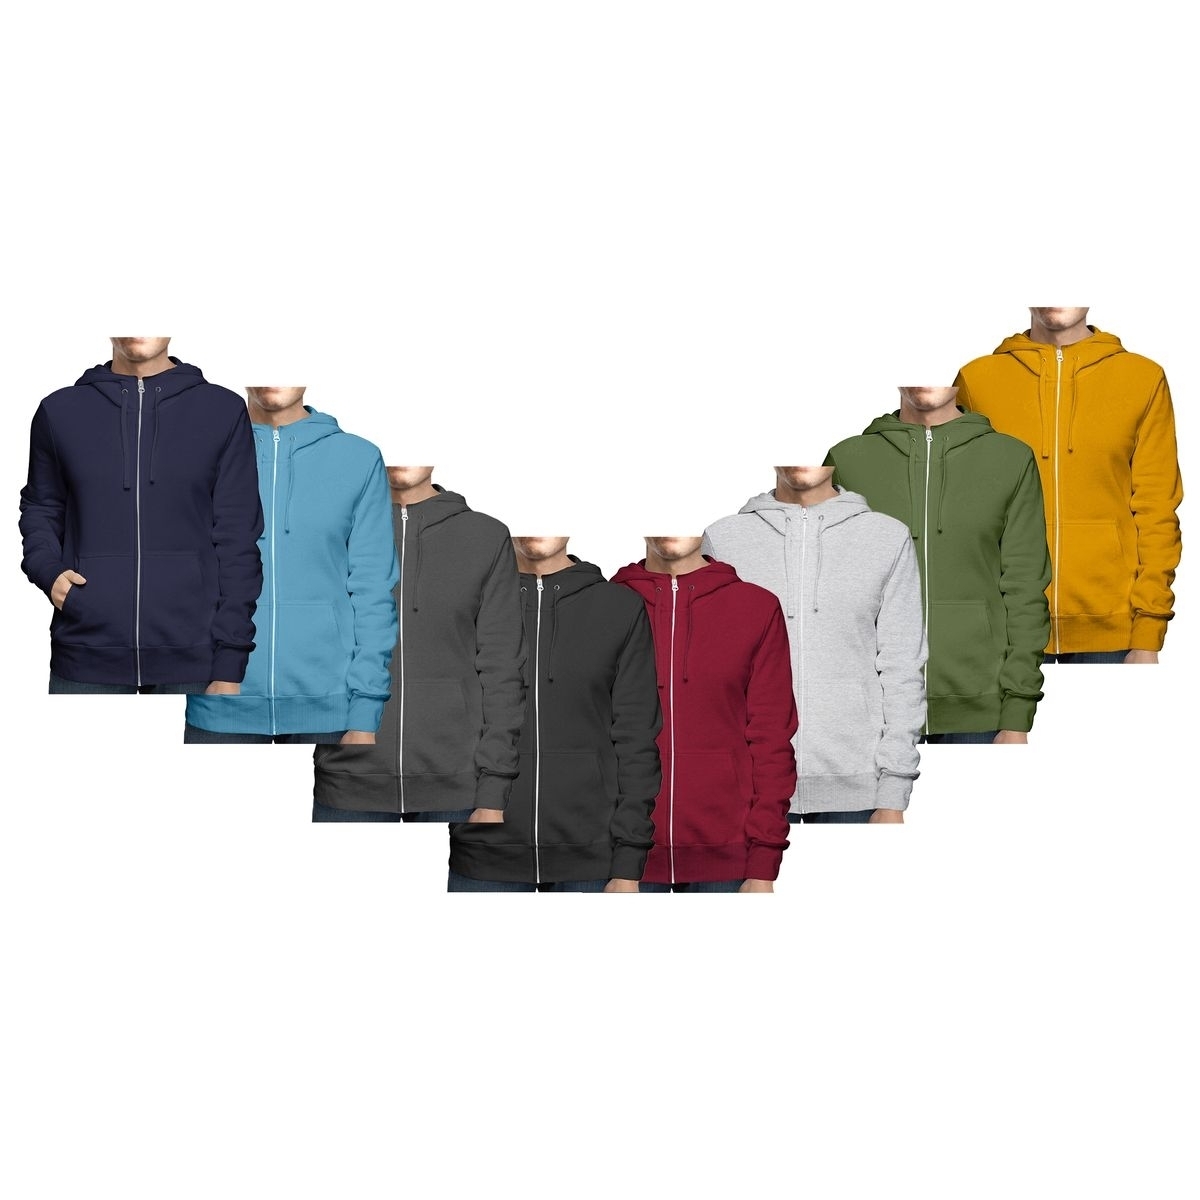 2-Pack: Men's Winter Warm Soft Cozy Full Zip-Up Fleece Lined Hoodie Sweatshirt - Small